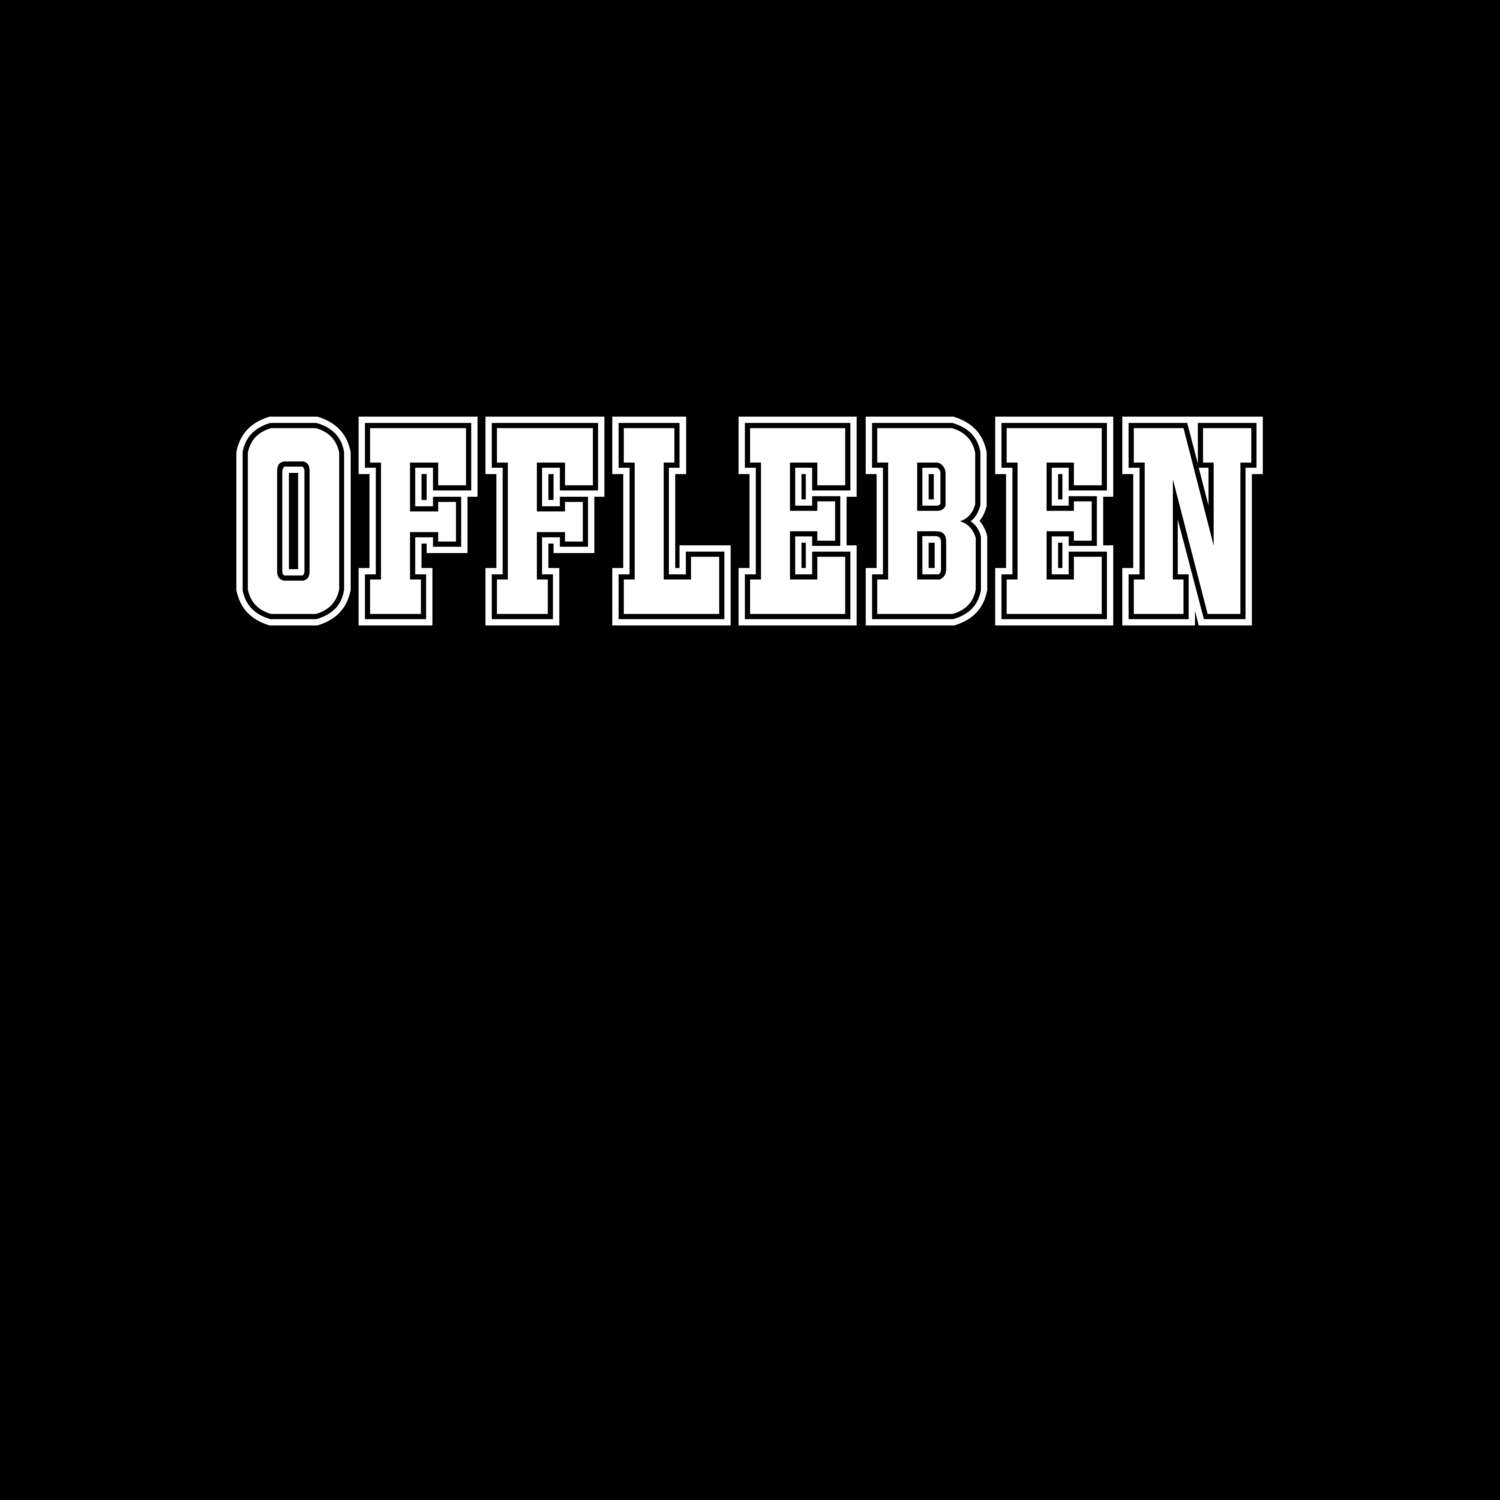 Offleben T-Shirt »Classic«